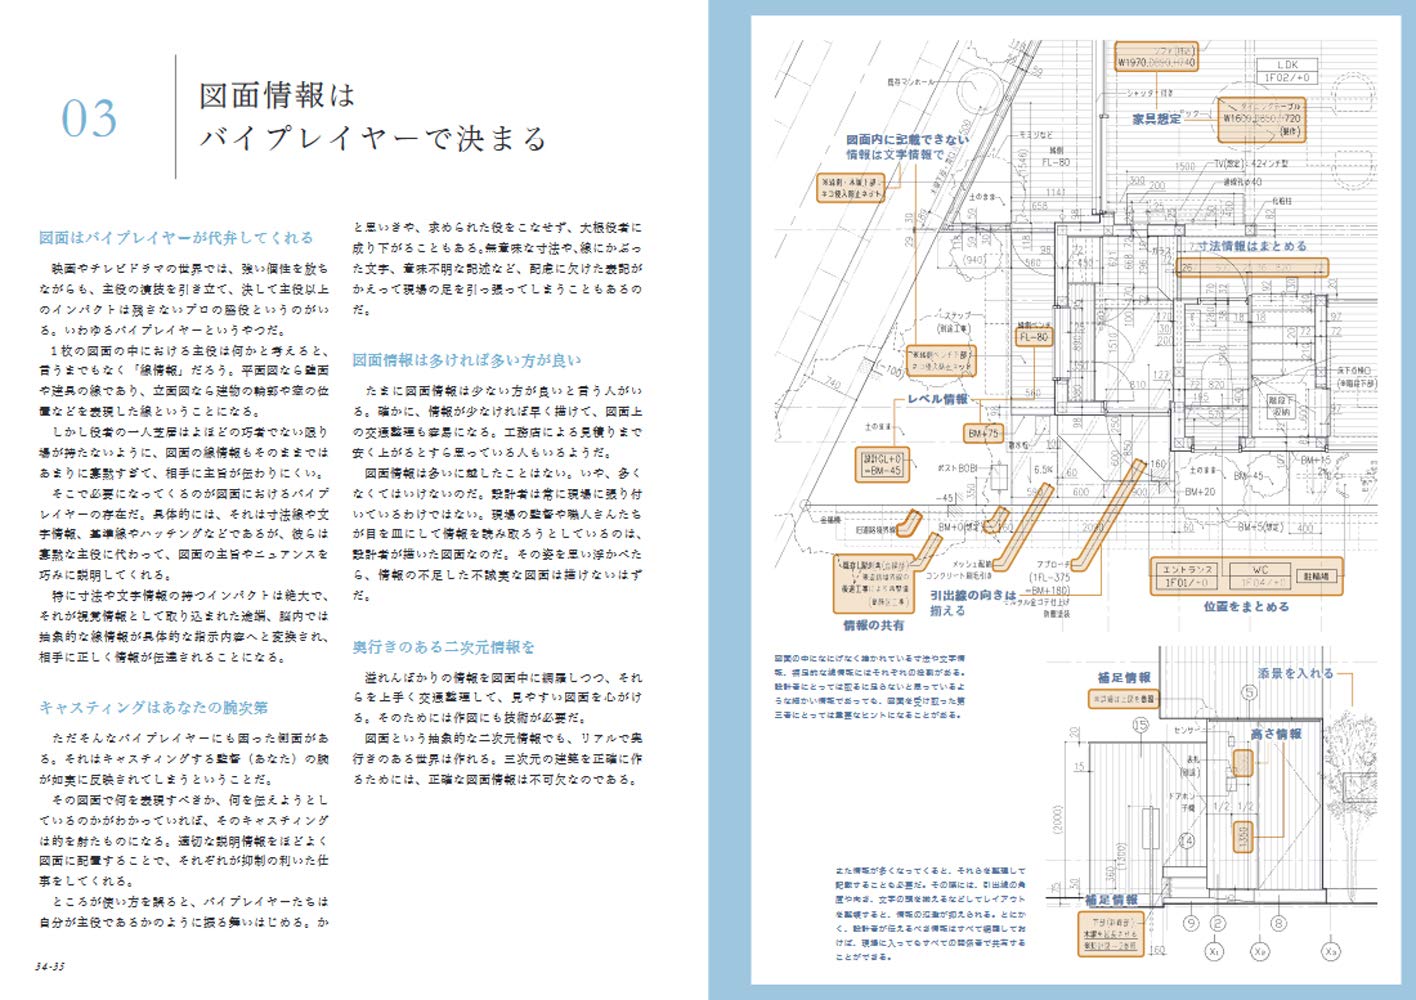 リフォームブックス 伝わる図面の描きかた 住宅の実施設計25の心構え B5判124頁